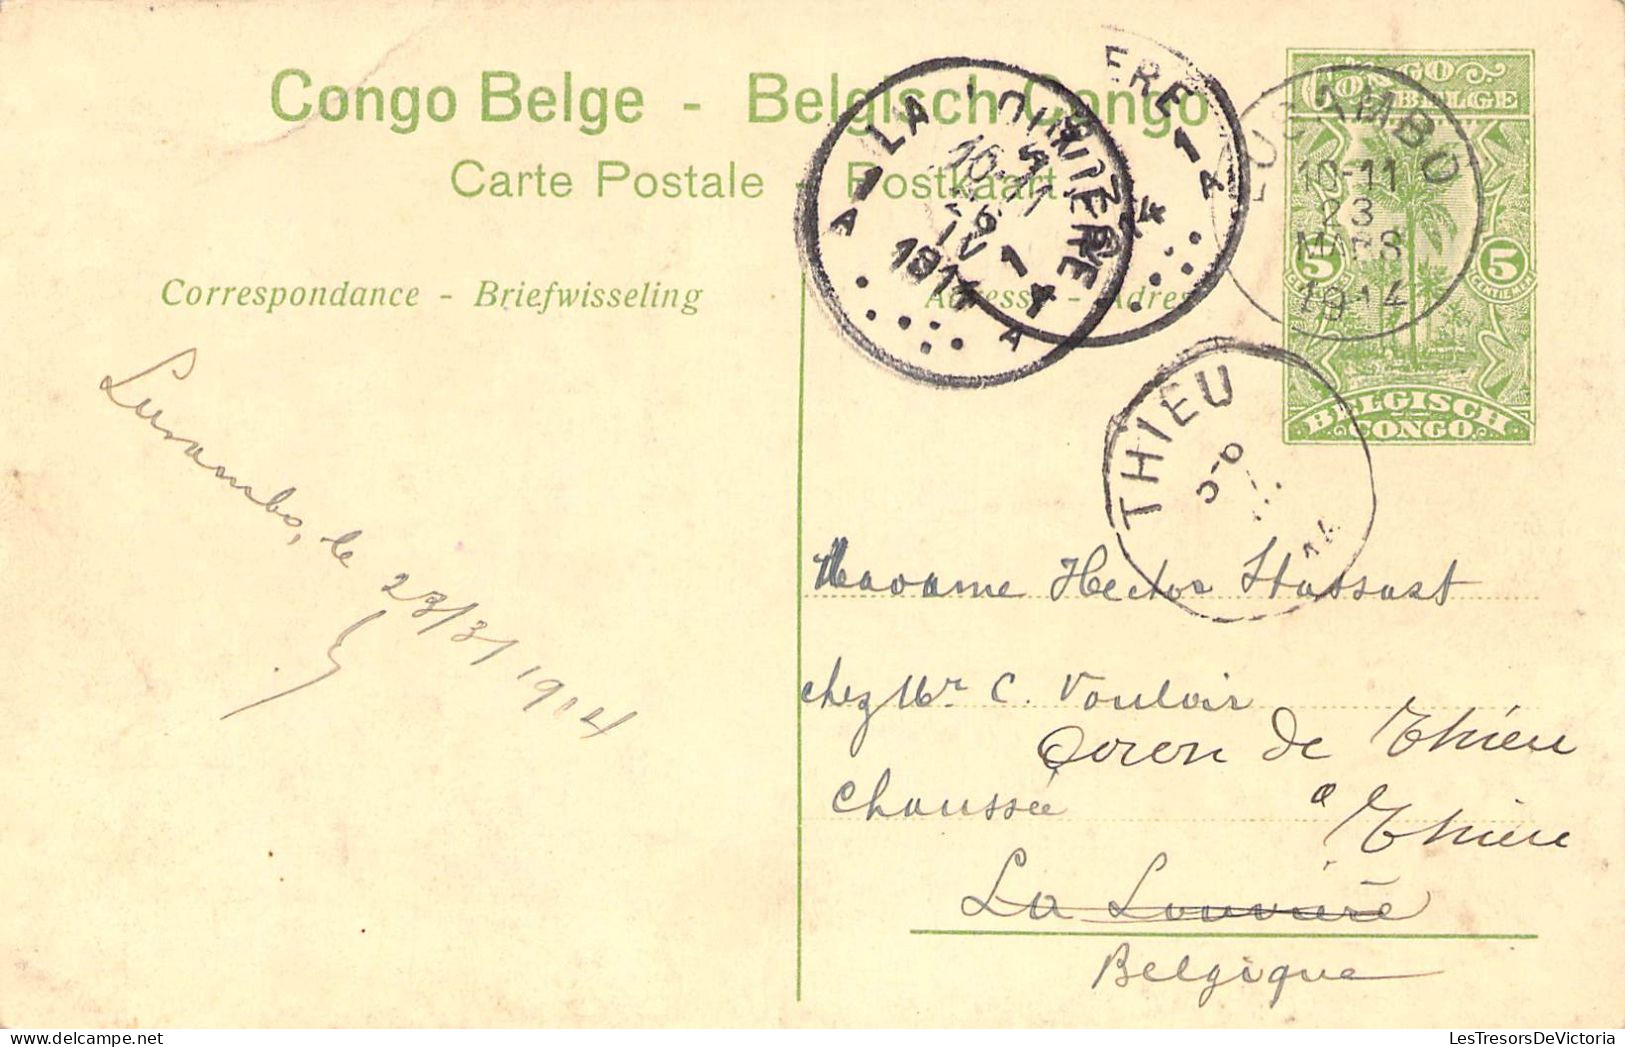 CONGO BELGE - Faucheuse Mécanique - Carte Postale Ancienne - Belgisch-Kongo